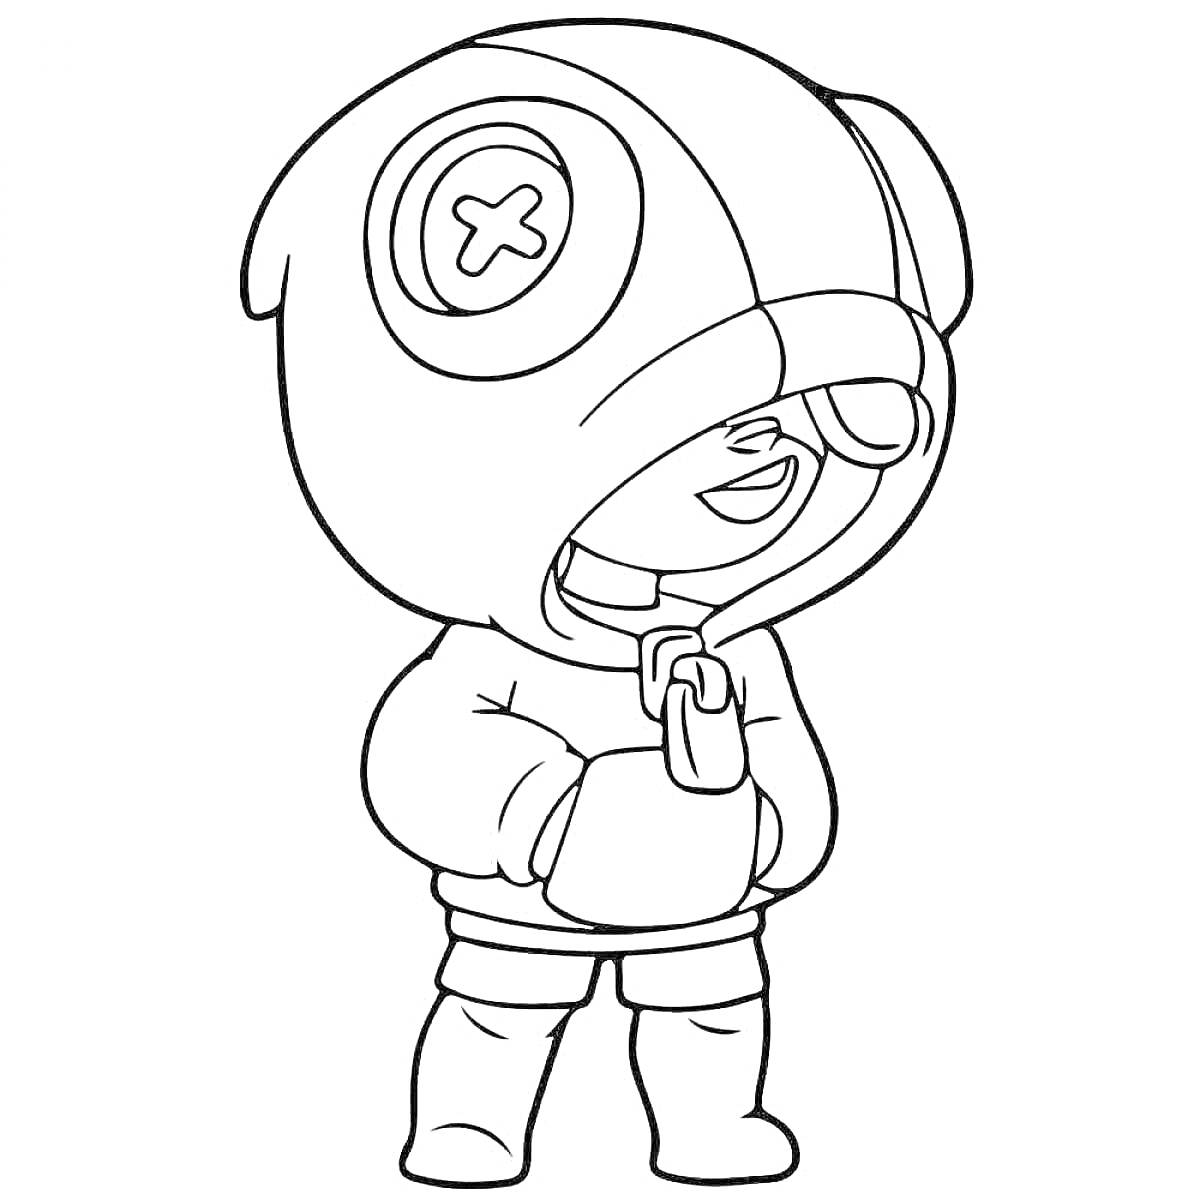 Раскраска Персонаж из игры в костюме с капюшоном и закрытым глазом, на капюшоне значок с крестиком